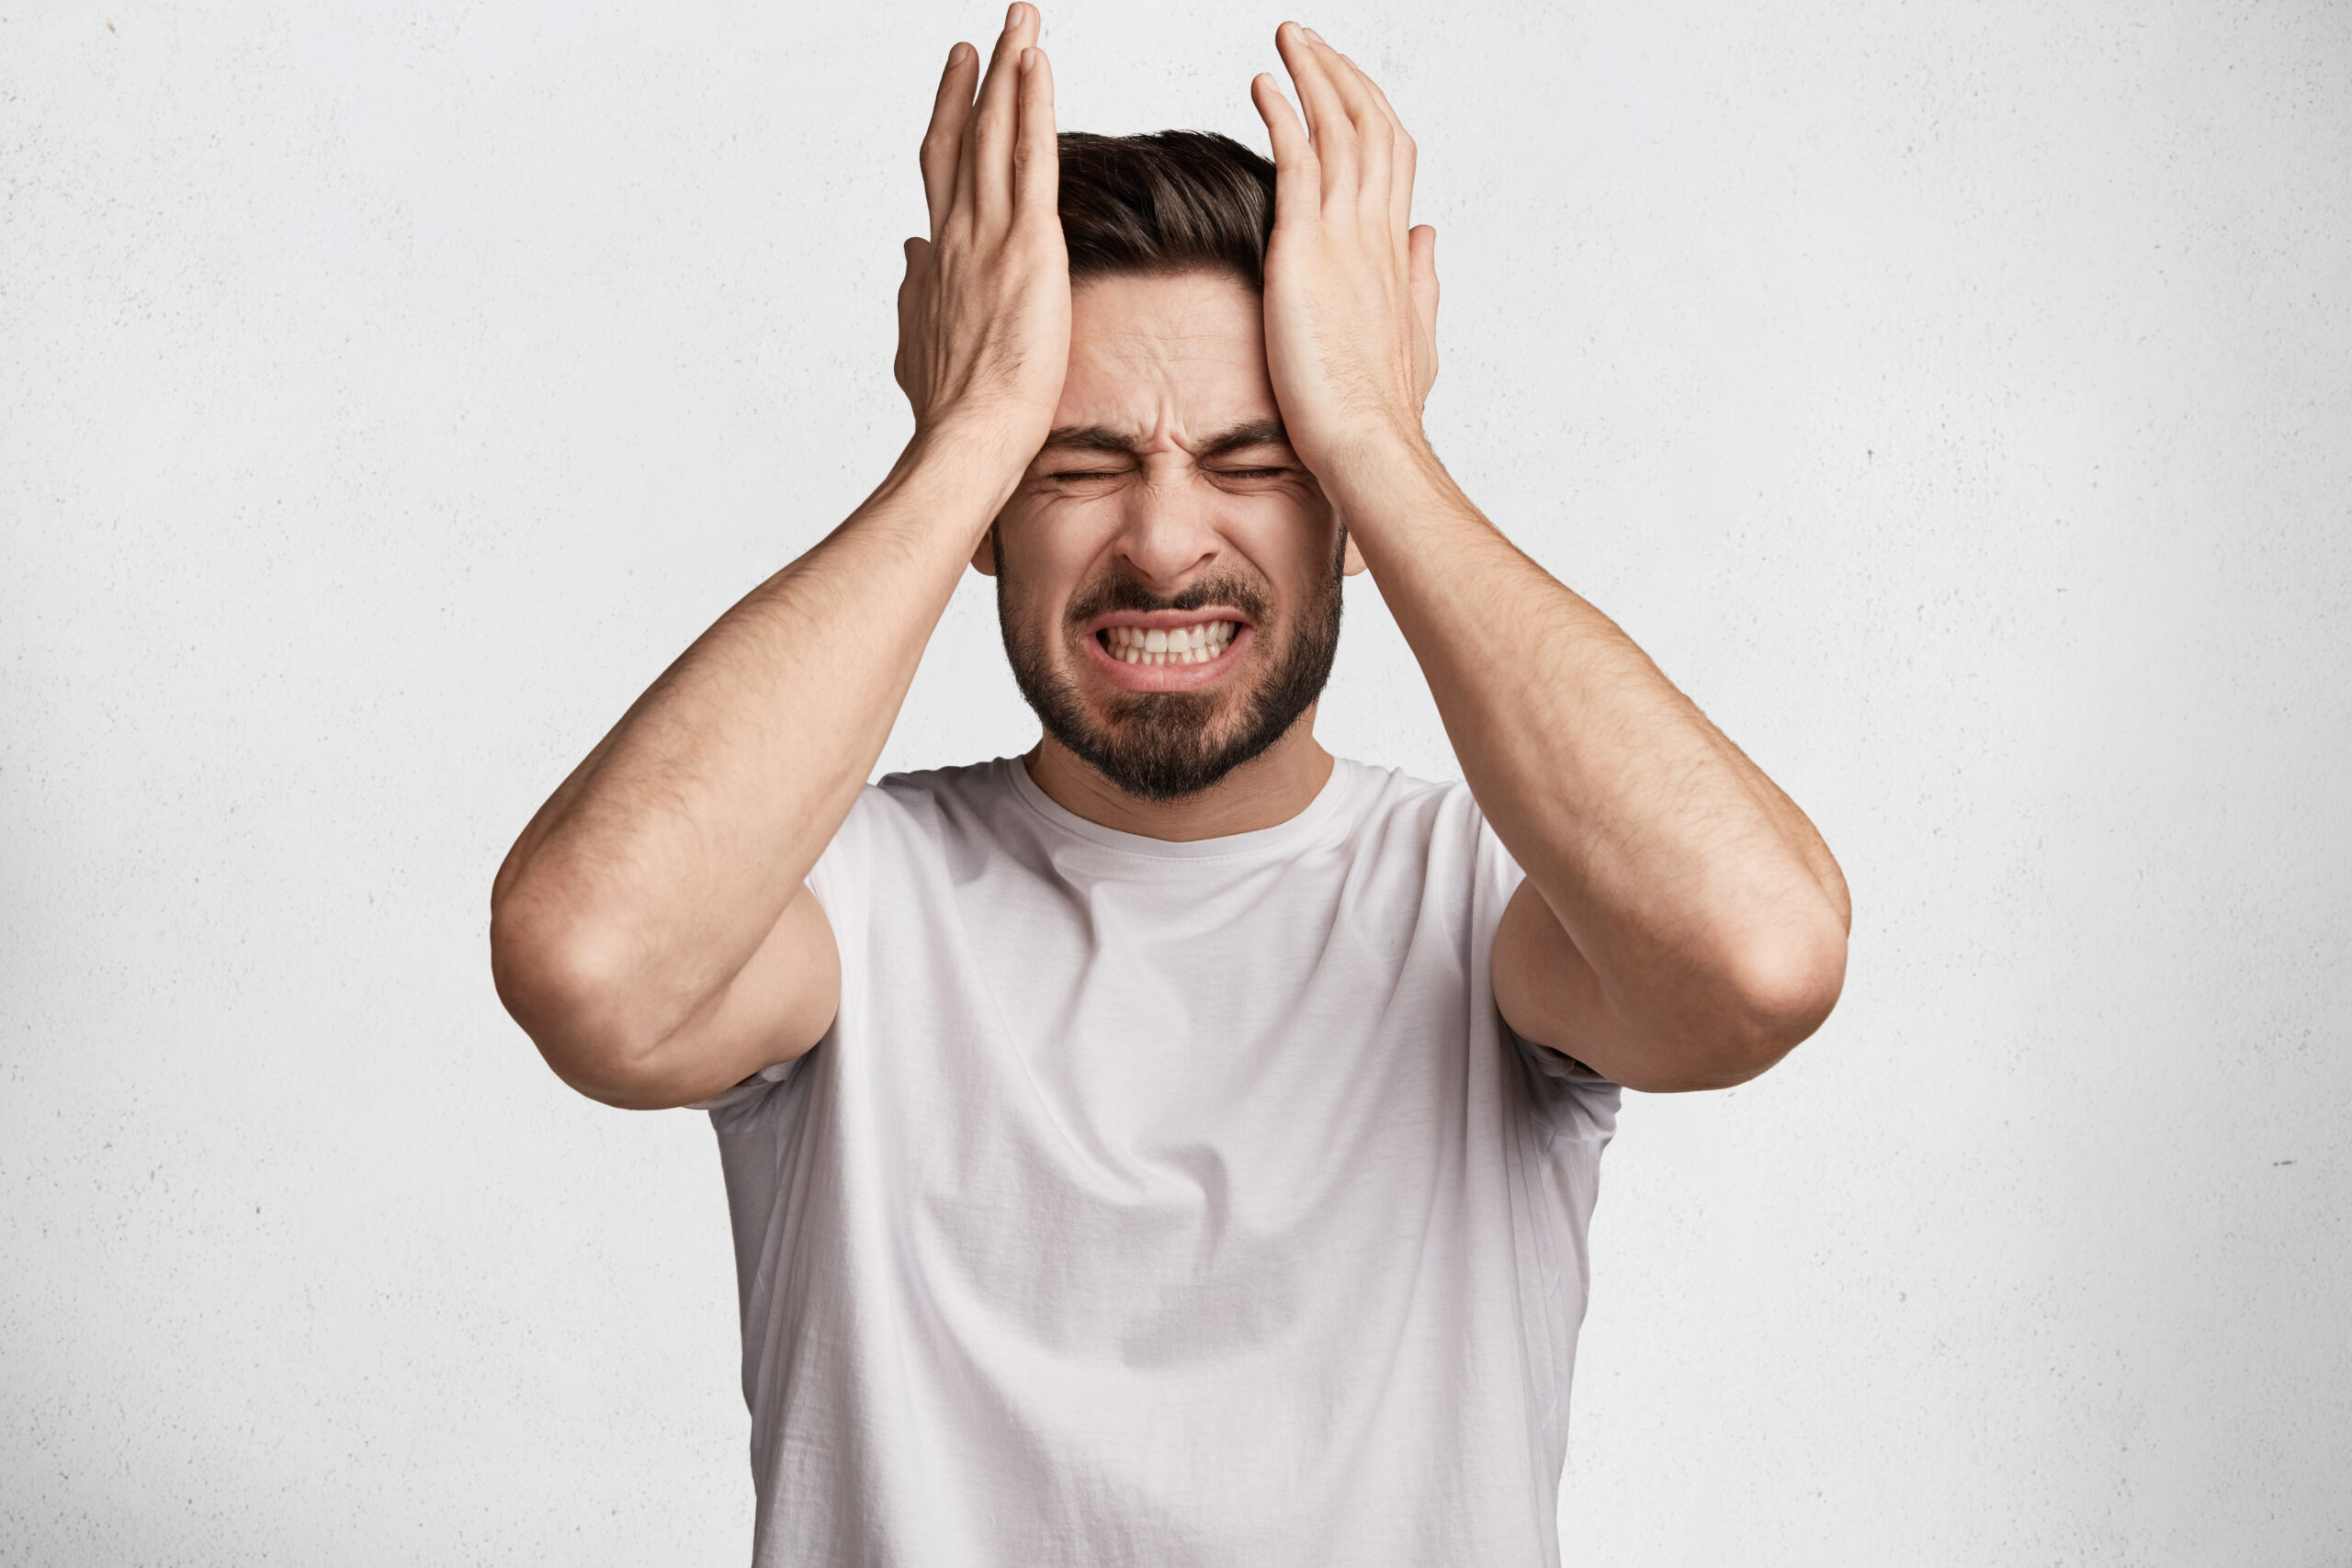 10 Types of Headaches and How to Treat Them|ഇതിൽ ഏത് തരം തലവേദനയാണ് നിങ്ങൾക്കുള്ളത് ??